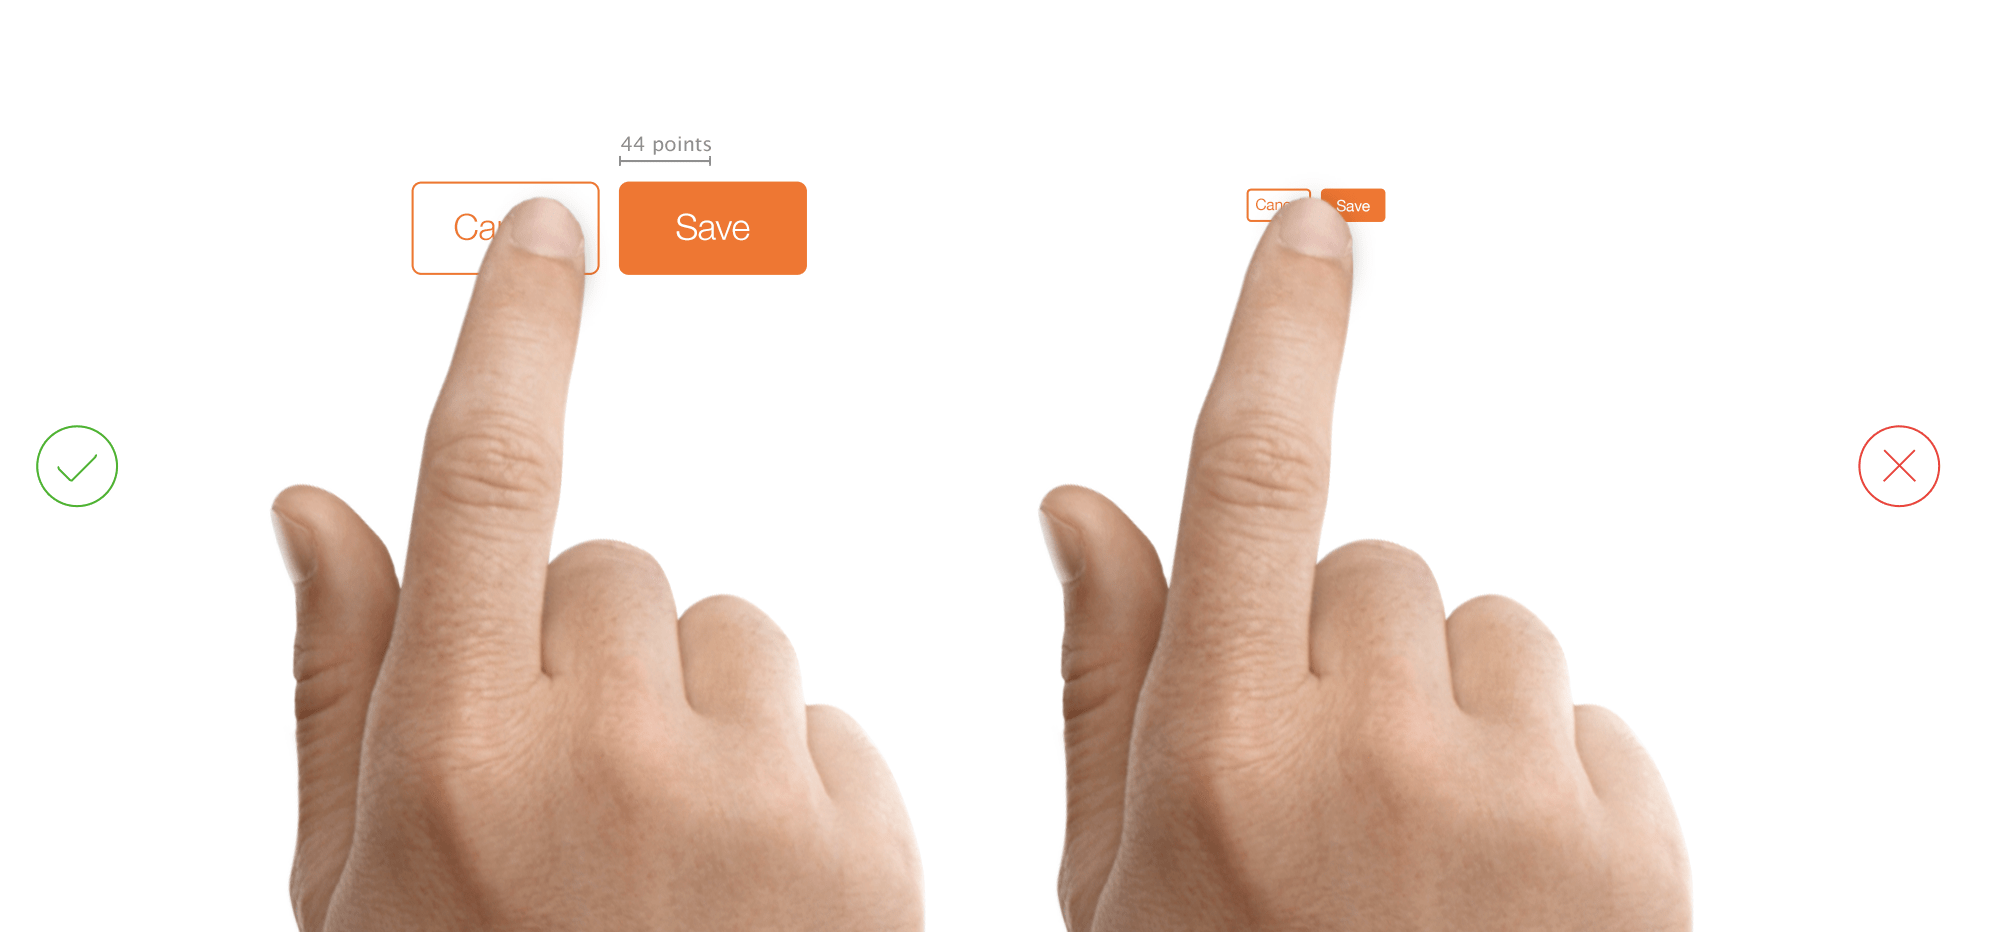 Small touches. Палец на кнопке. Палец нажимает на кнопку. Накладка на палец для нажатия на кнопки. Мемы про UX UI дизайнера.